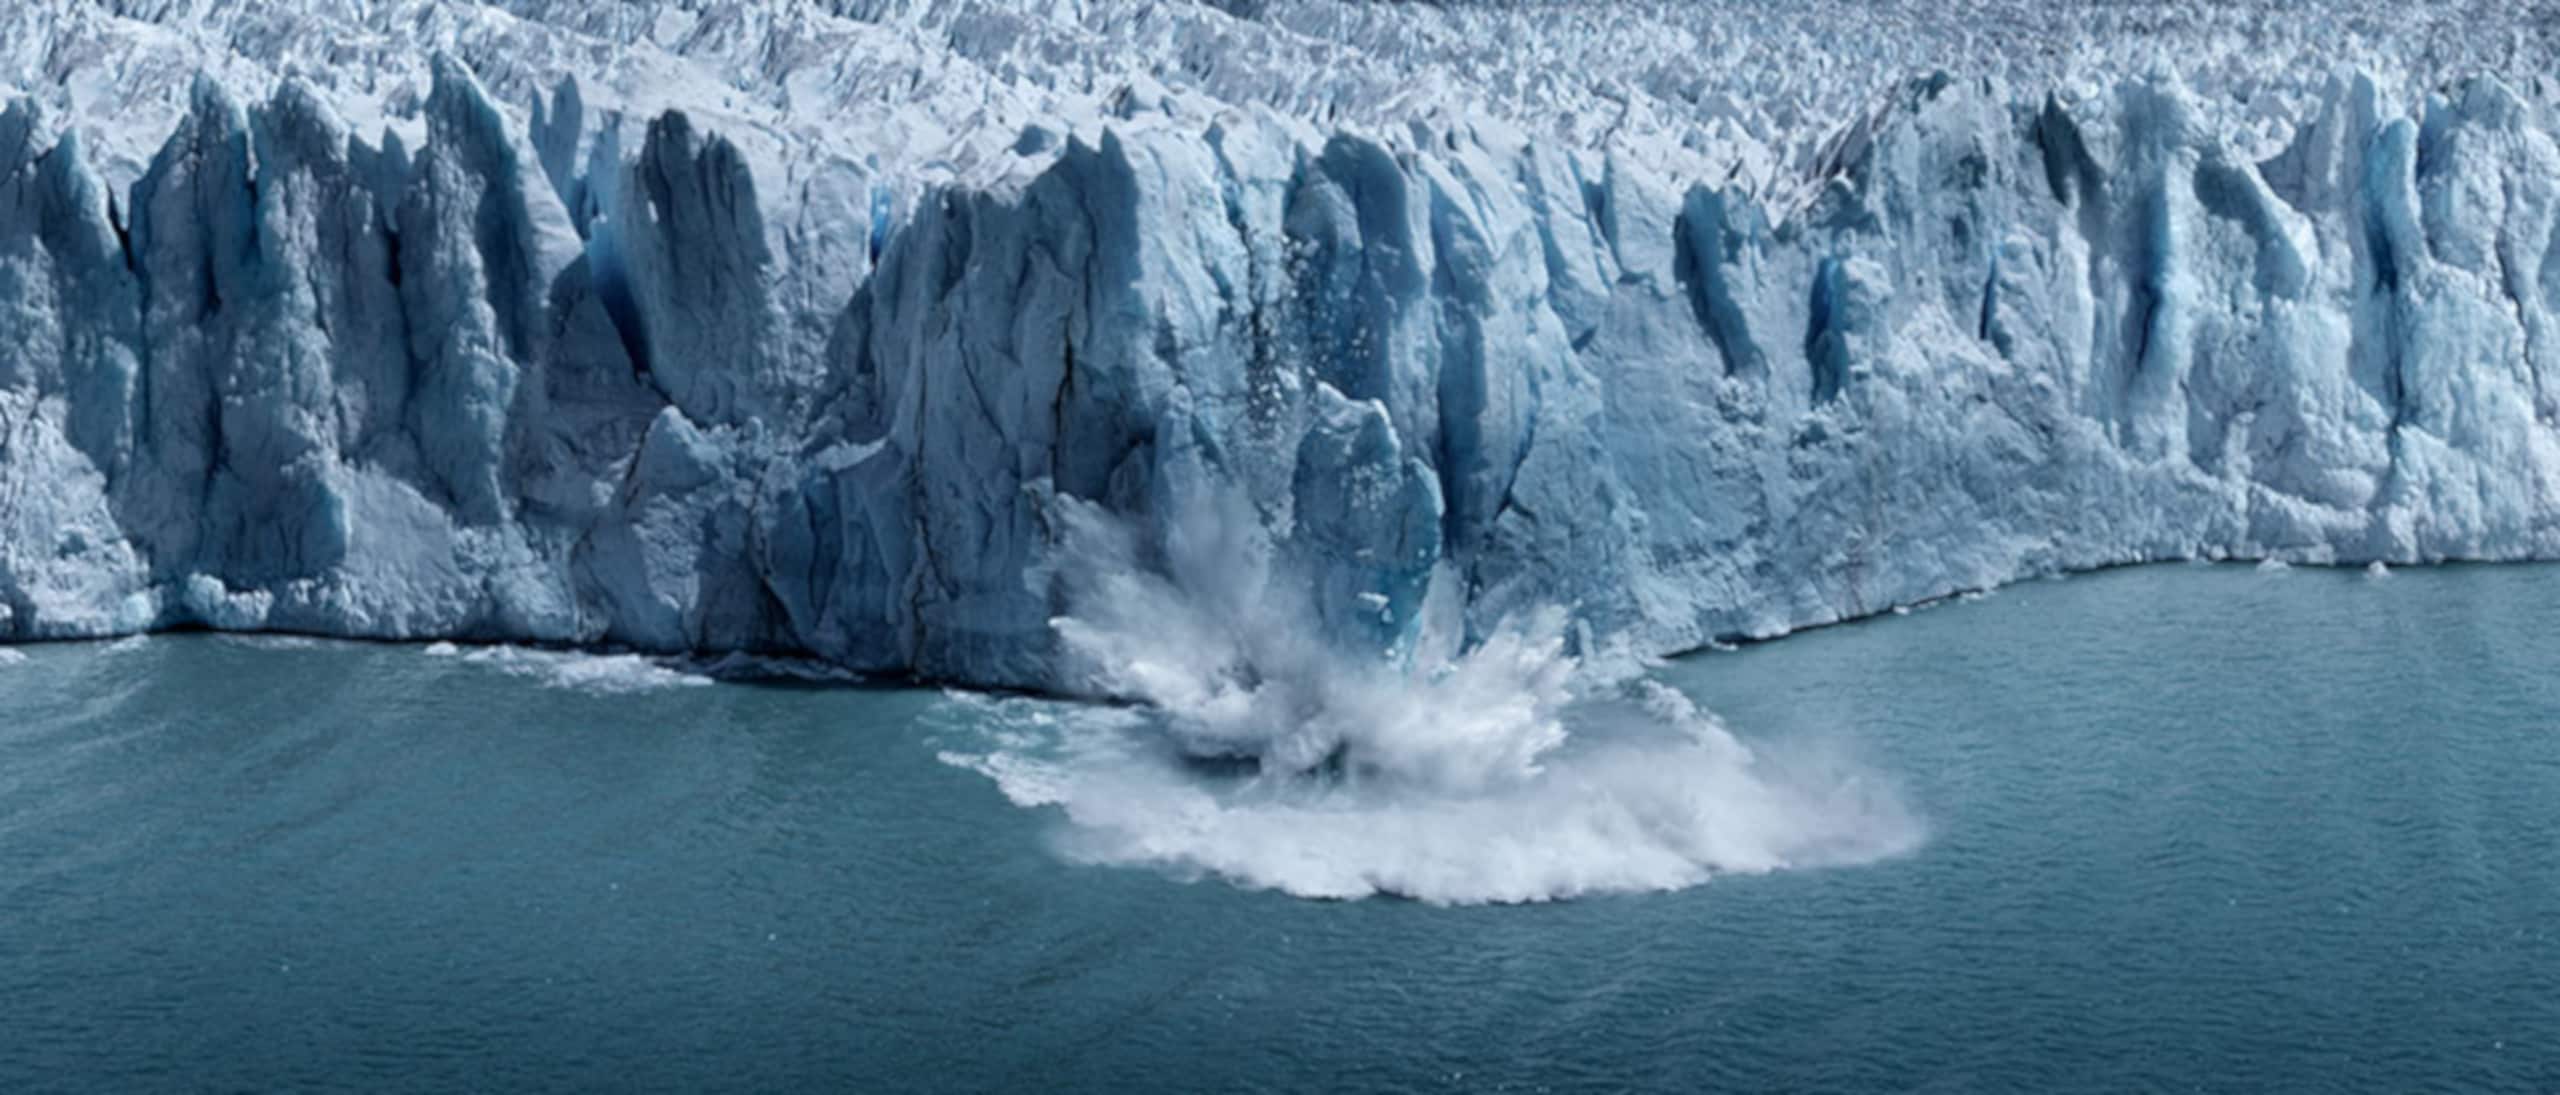 Bild eines schmelzenden Gletschers